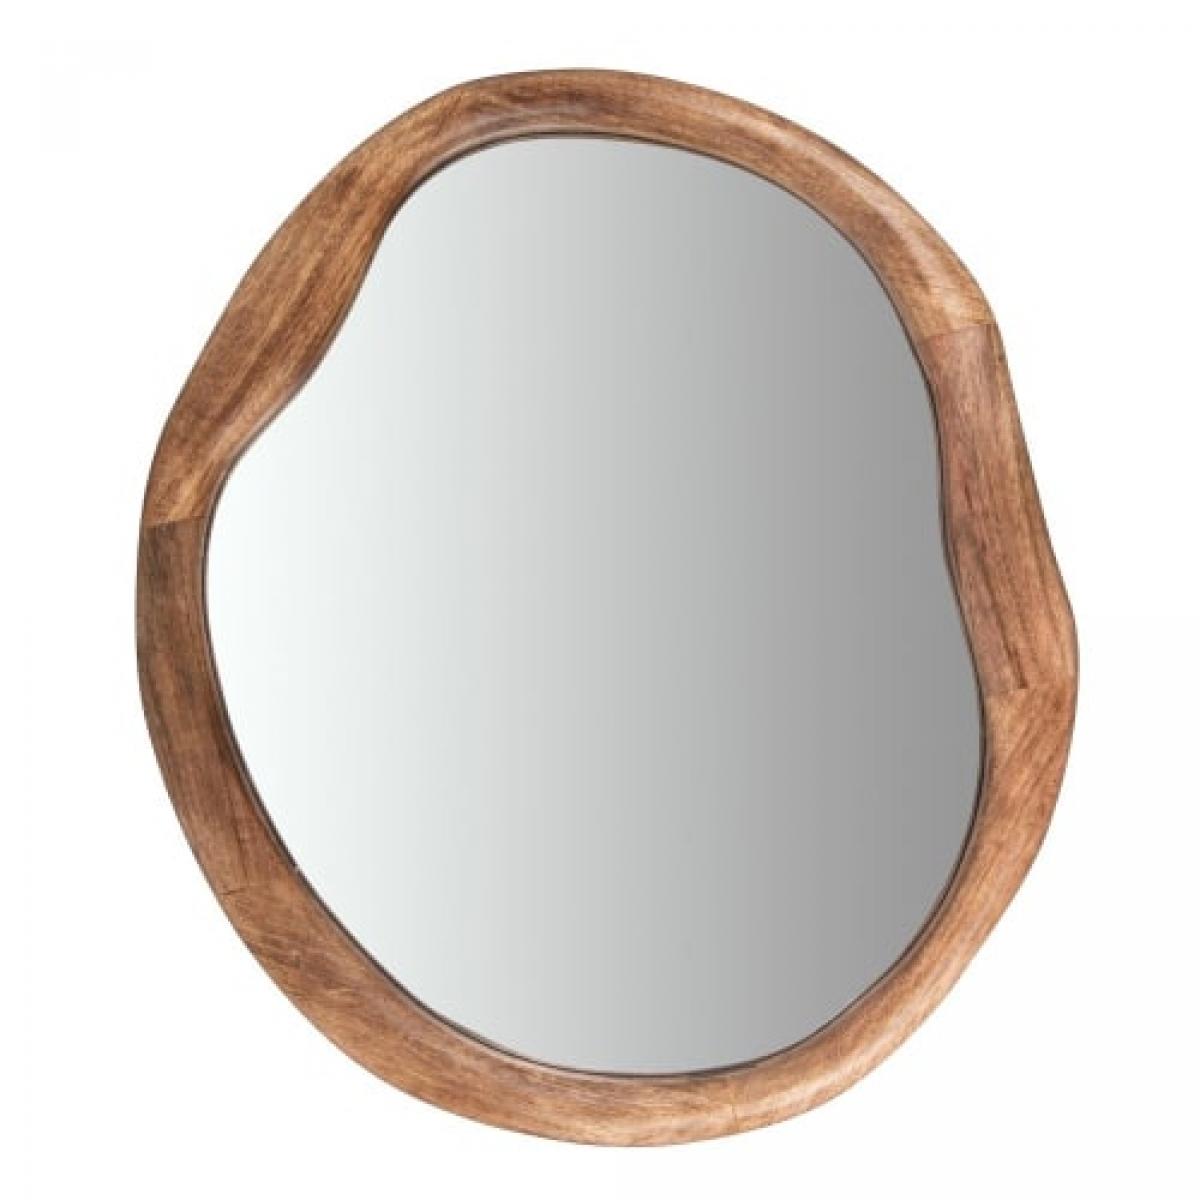 Le miroir en bois de manguier